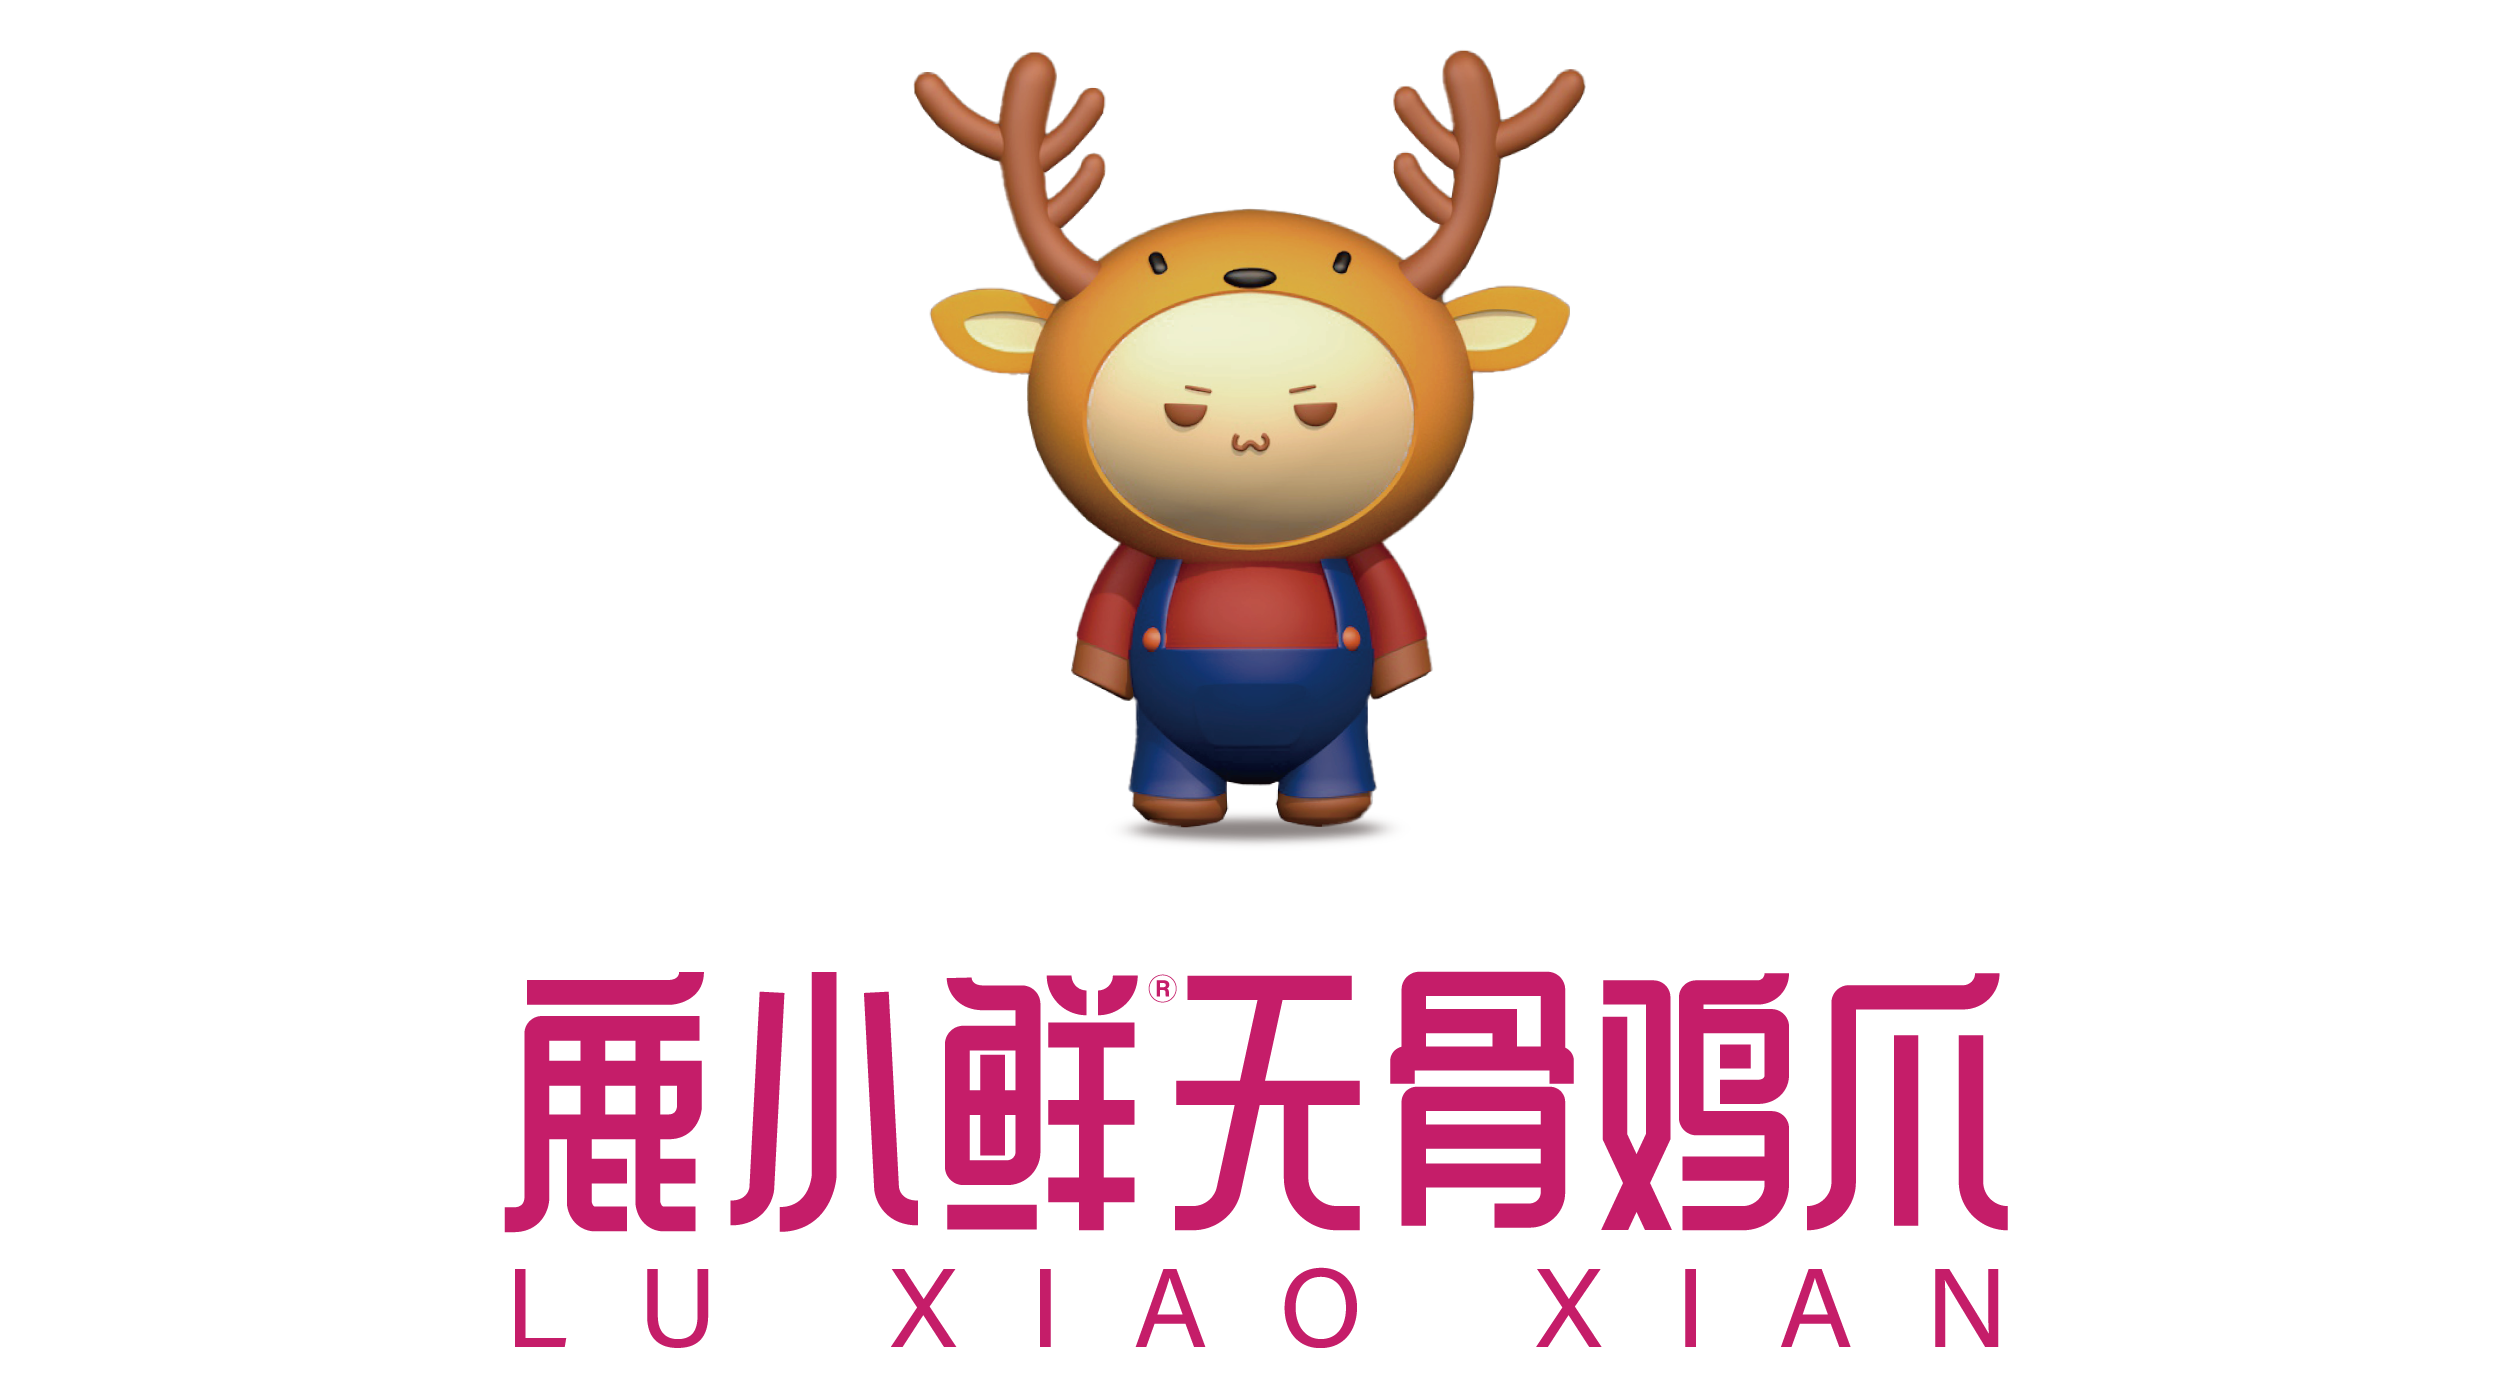 Lu Xiao Xian Logo.png